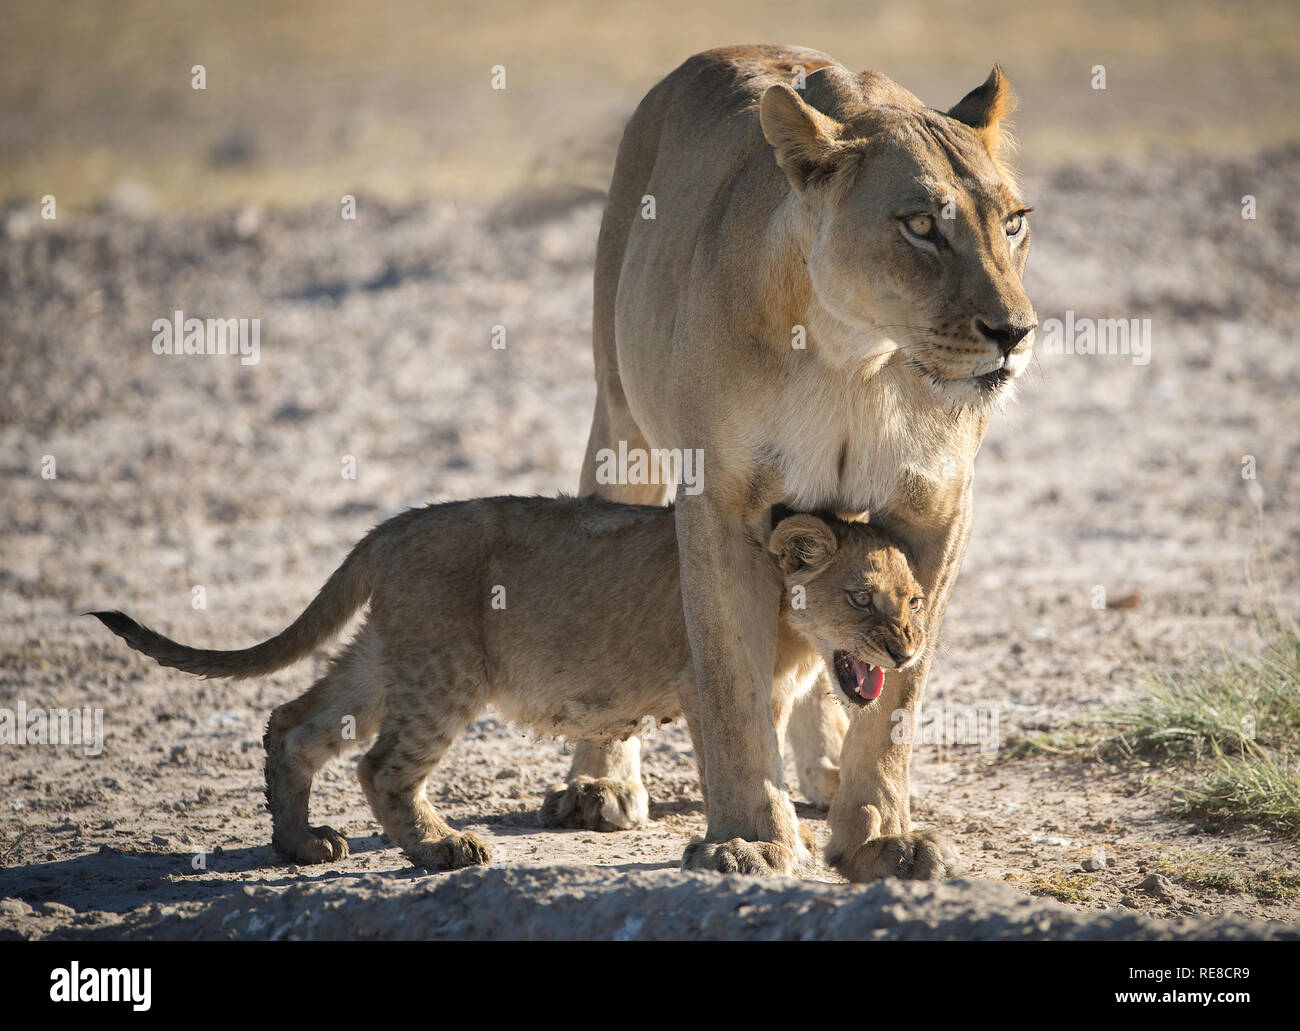 Ein lion Cub versteckt zwischen ihr Mütter Beine. Sie wurde von einem sich nähernden Gnus erschrocken Stockfoto